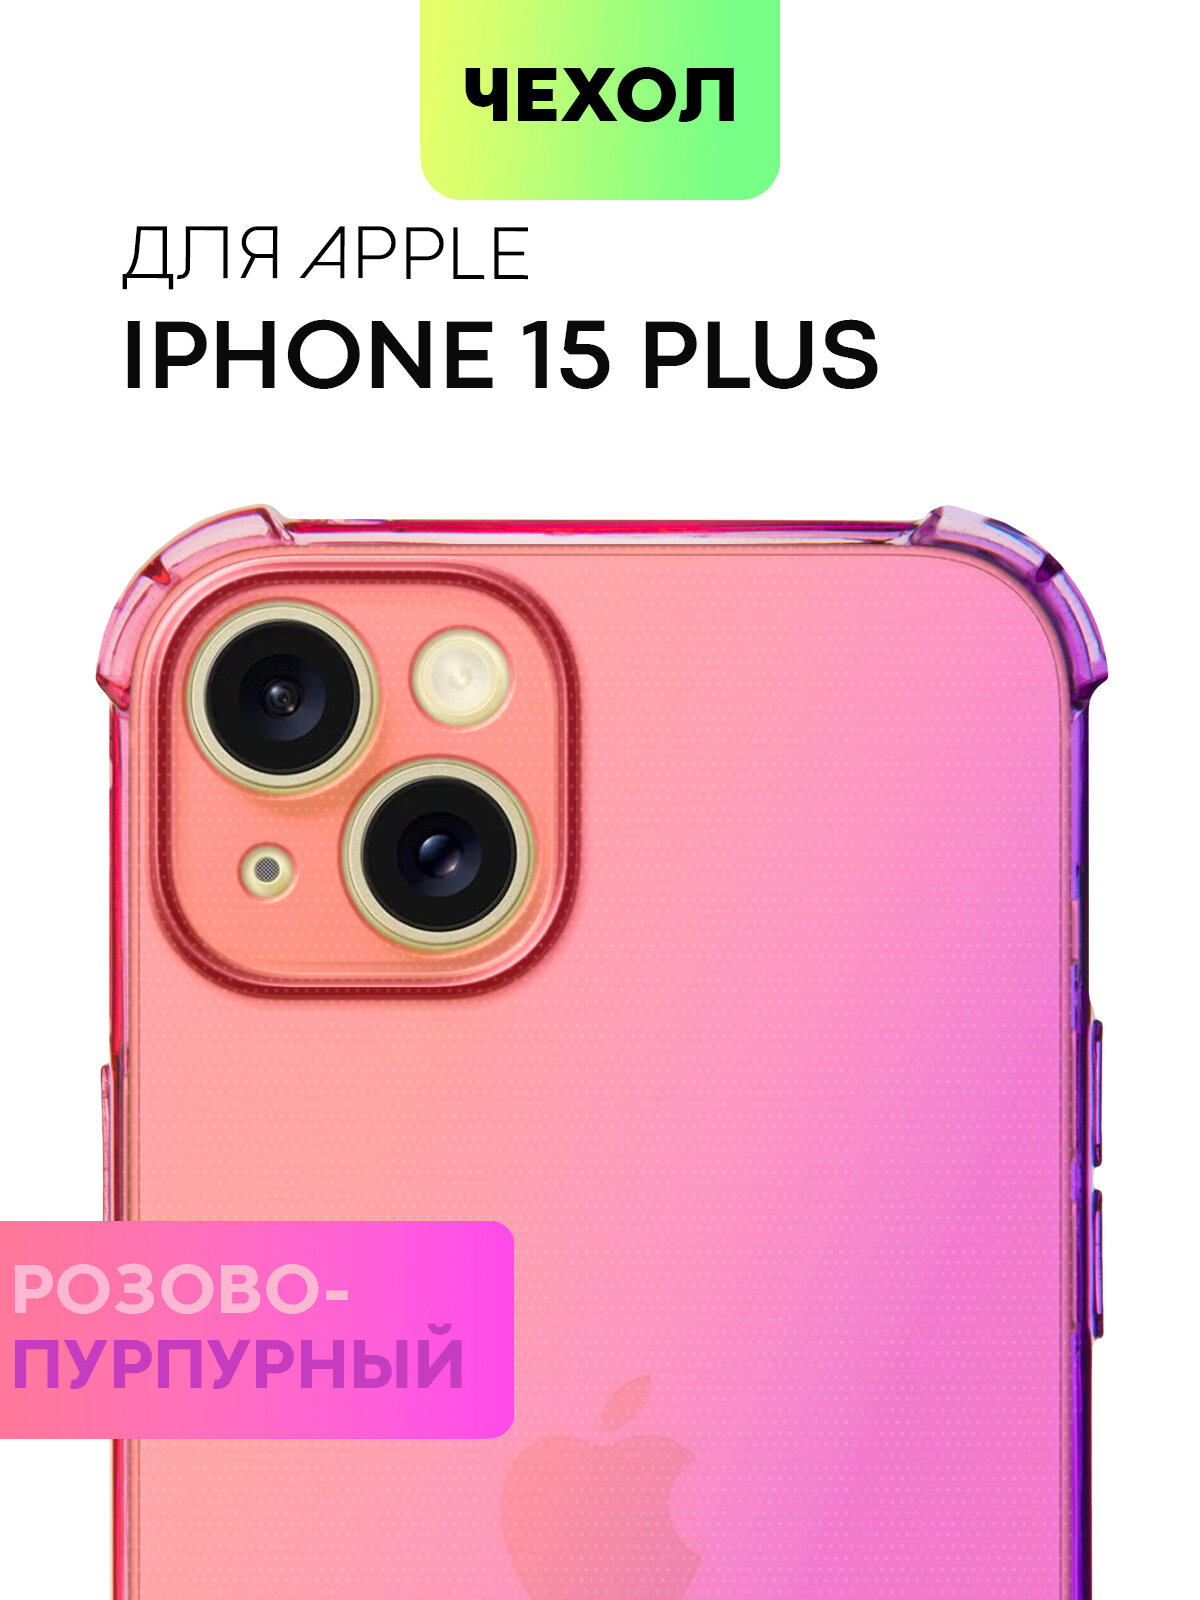 Чехол для Apple iPhone 15 Plus (Эпл Айфон 15 Плюс) противоударный силиконовый усиленный защитой камер чехол BROSCORP прозрачный фиолетово-синий